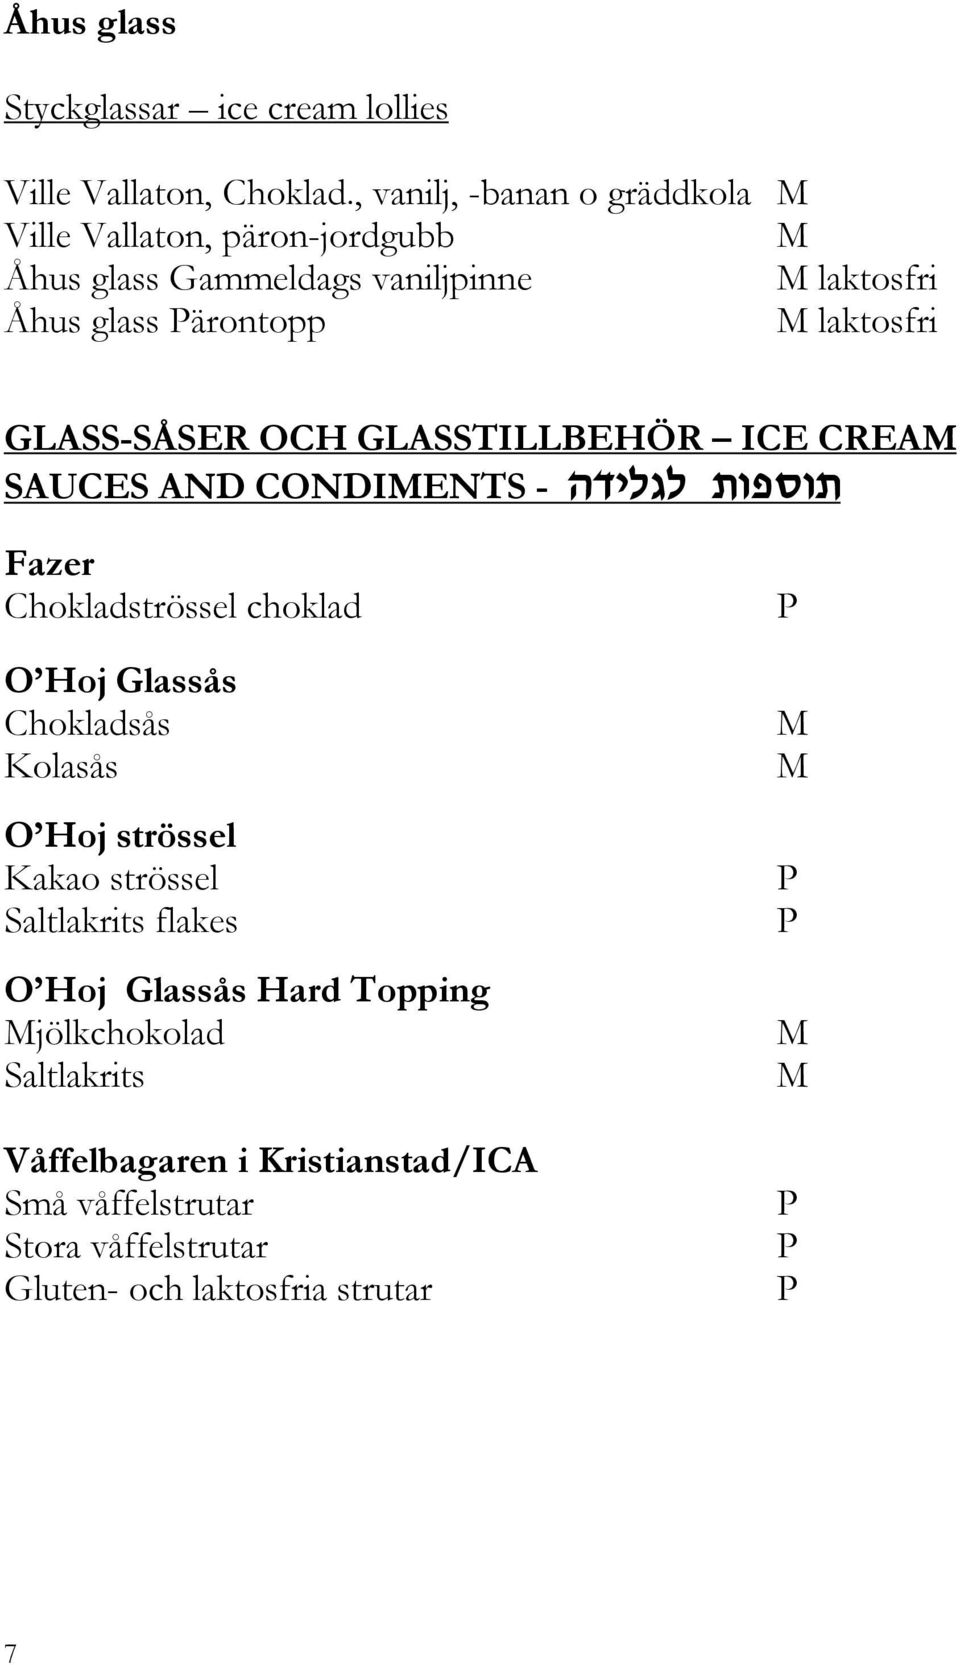 GLASS-SÅSER OCH GLASSTILLBEHÖR ICE CREA SAUCES AND CONDIENTS - vshkdk,upxu, Fazer Chokladströssel choklad O Hoj Glassås Chokladsås